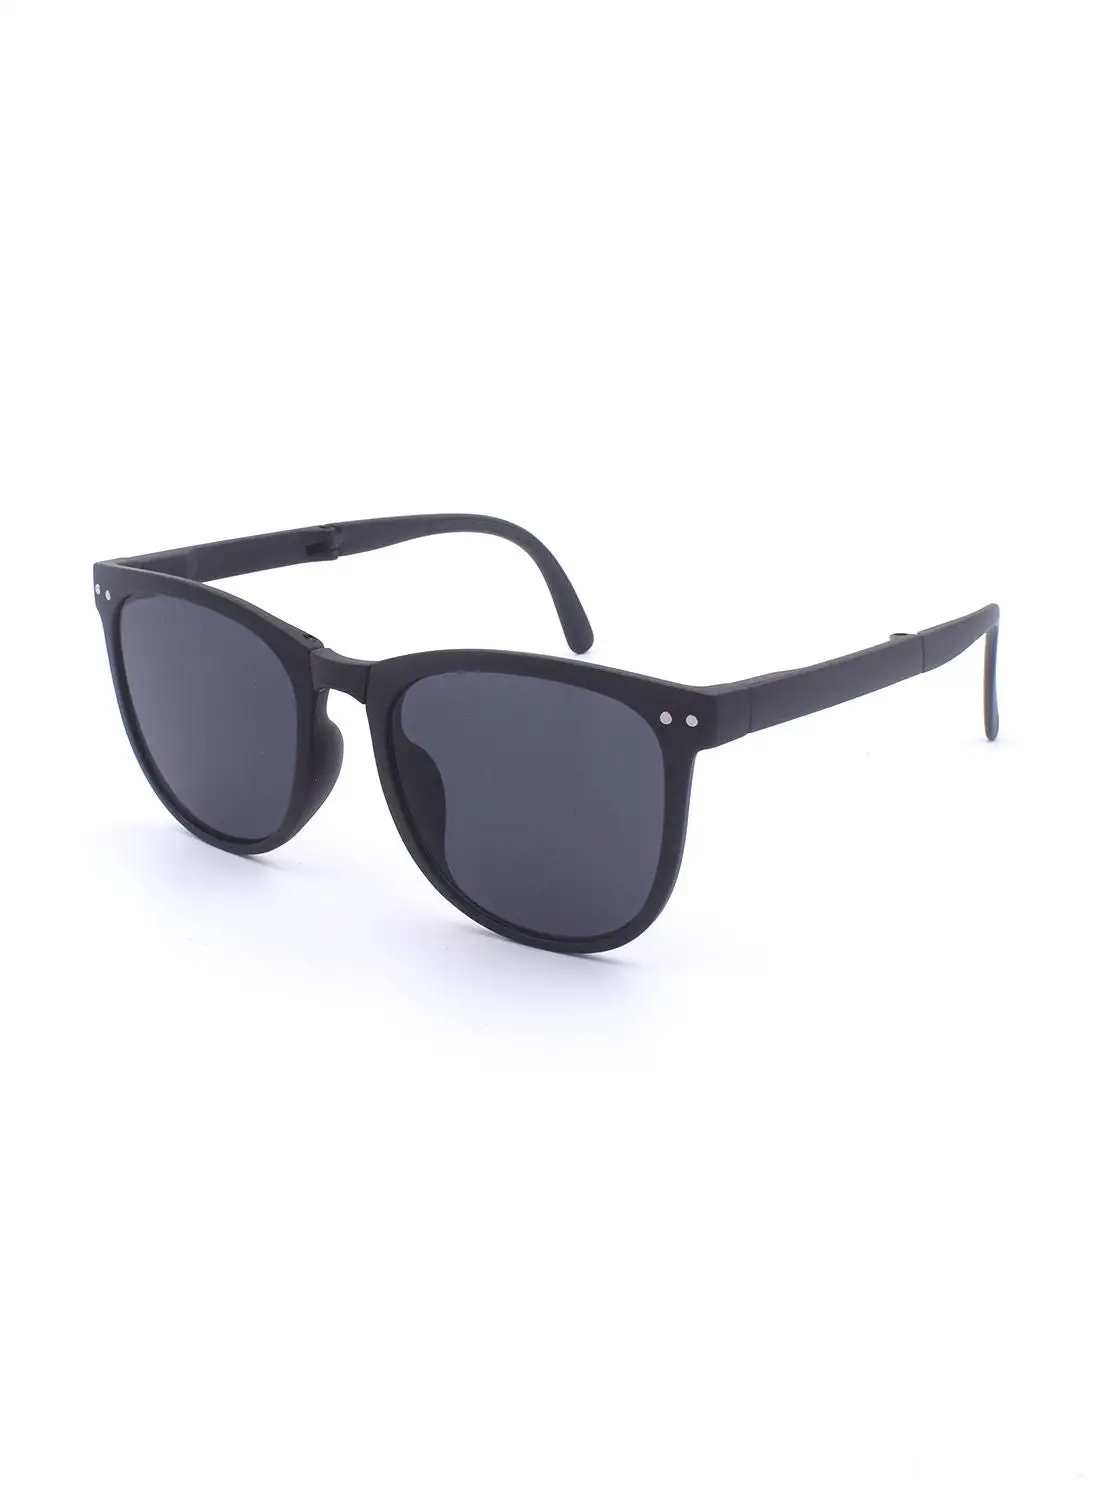 MADEYES Oversized Sunglasses EE20X064-1